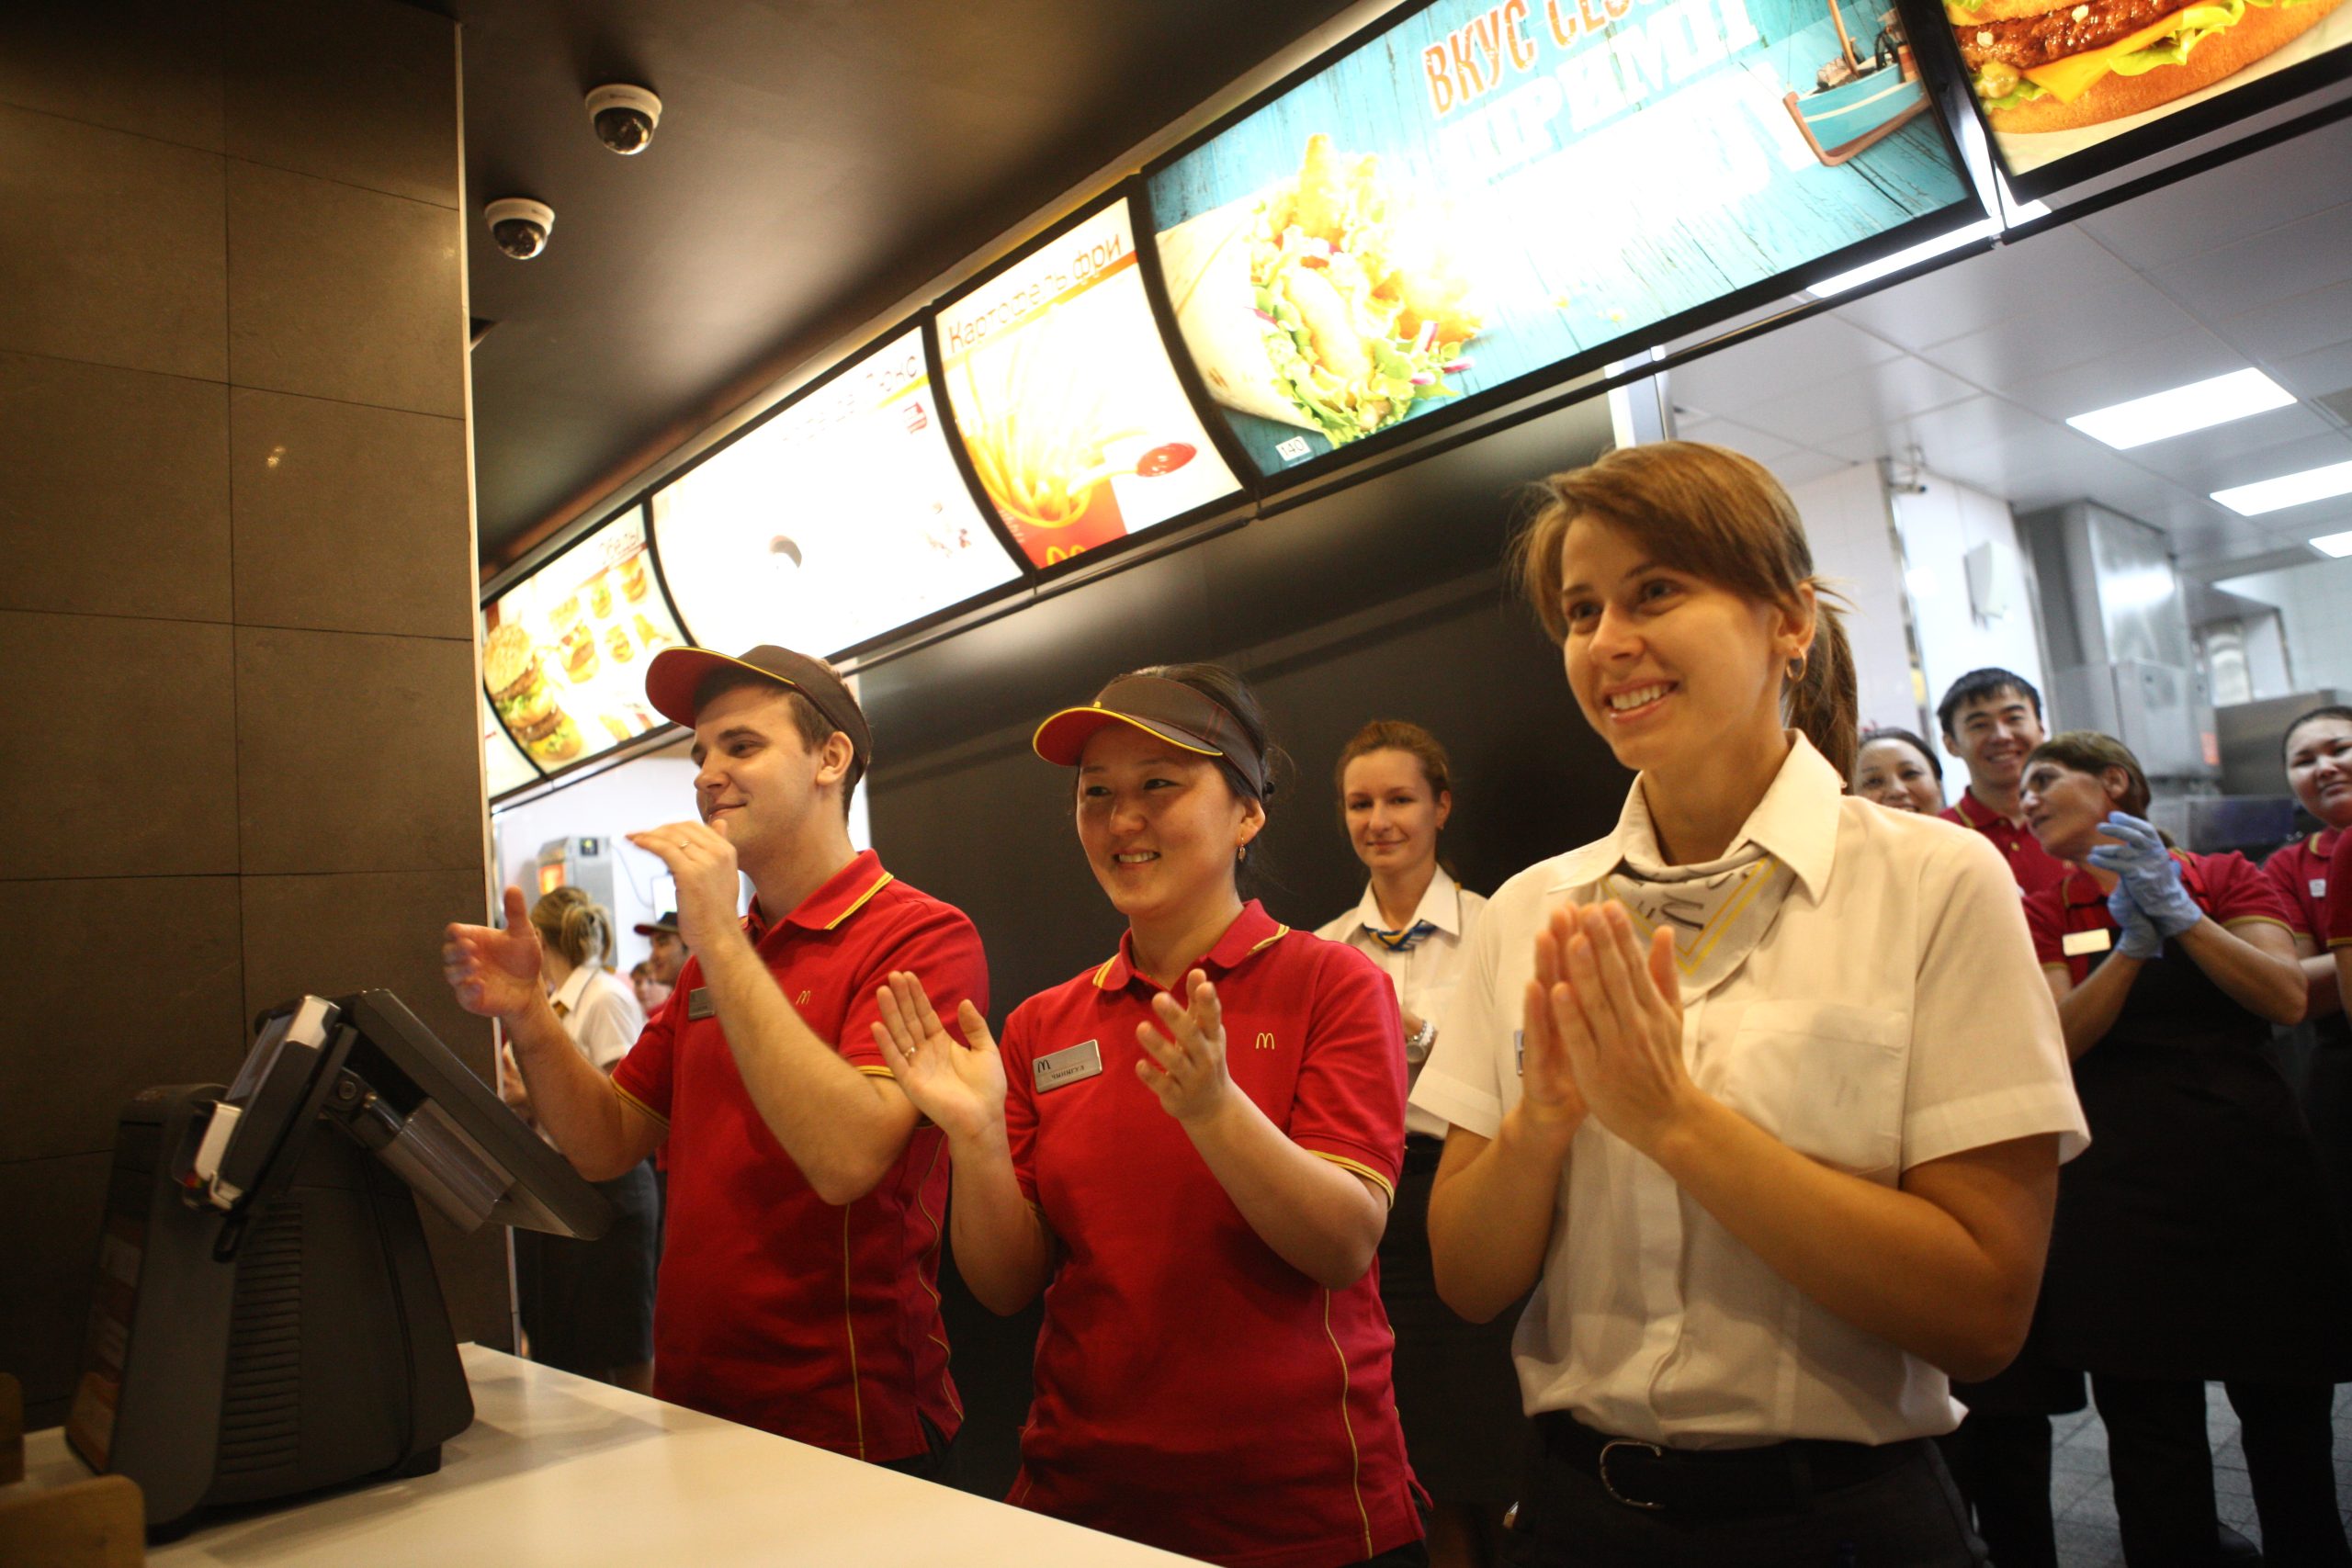 Рестораны McDonald's могут открыться снова уже через полтора месяца